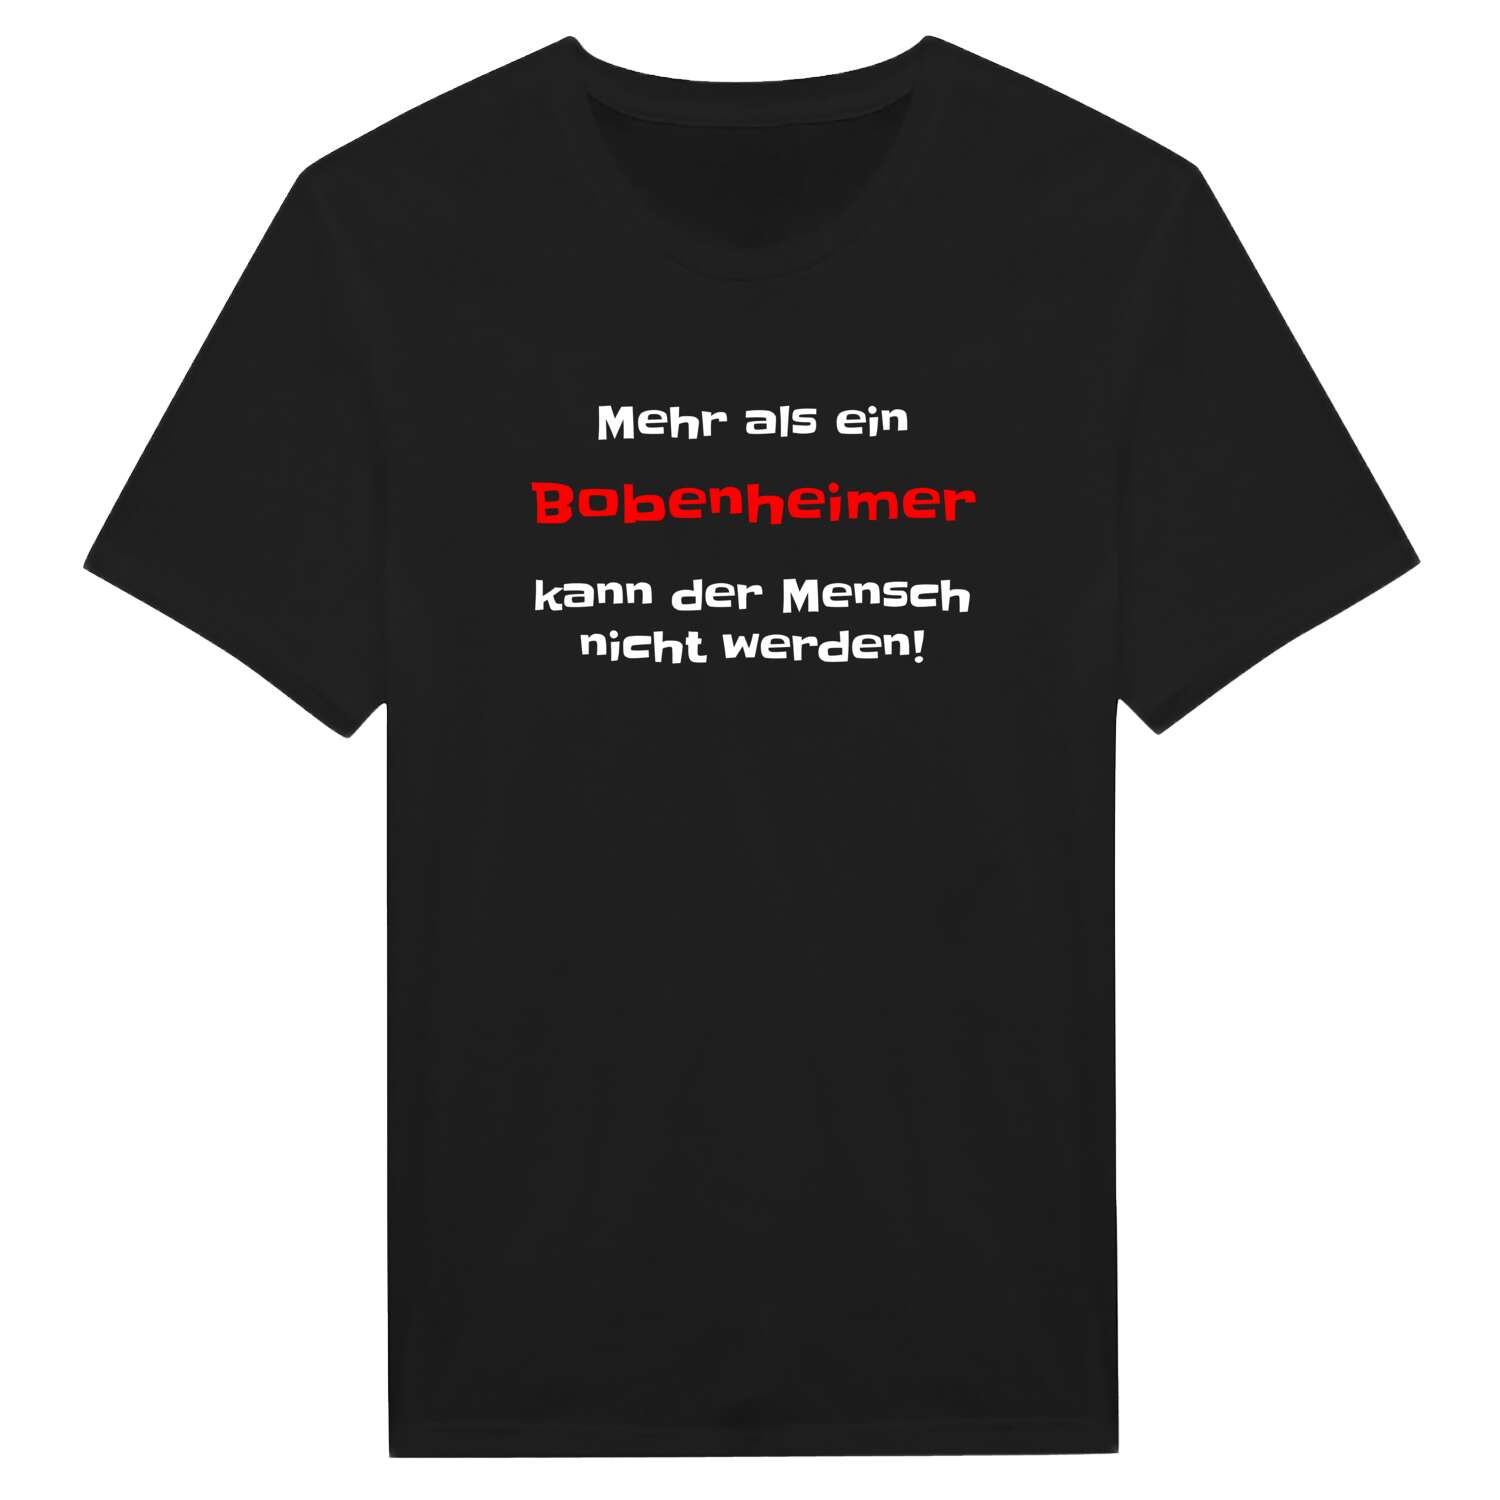 Bobenheim T-Shirt »Mehr als ein«